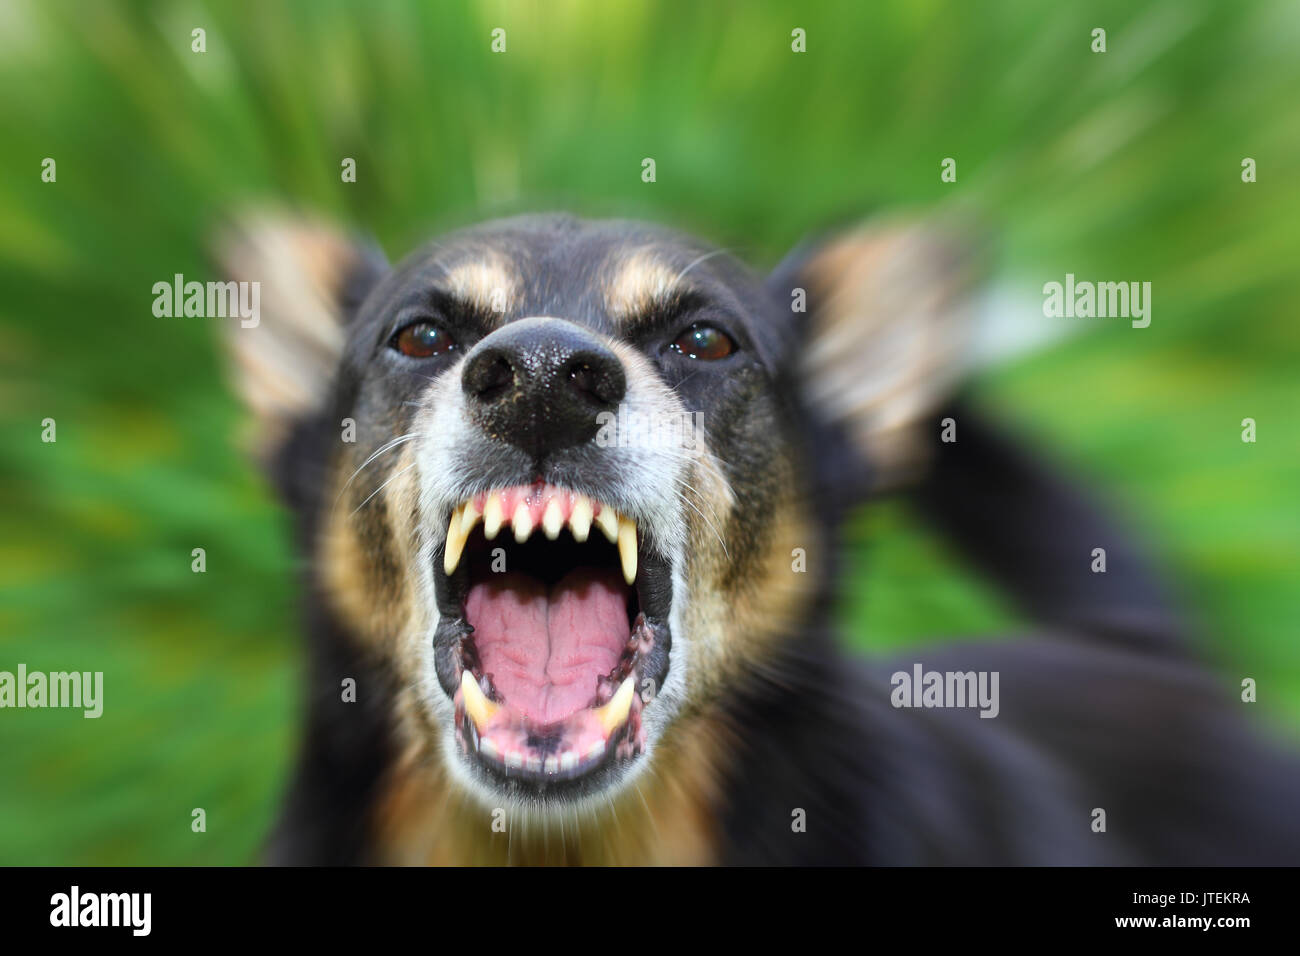 Barking enraged shepherd dog outdoors Stock Photo